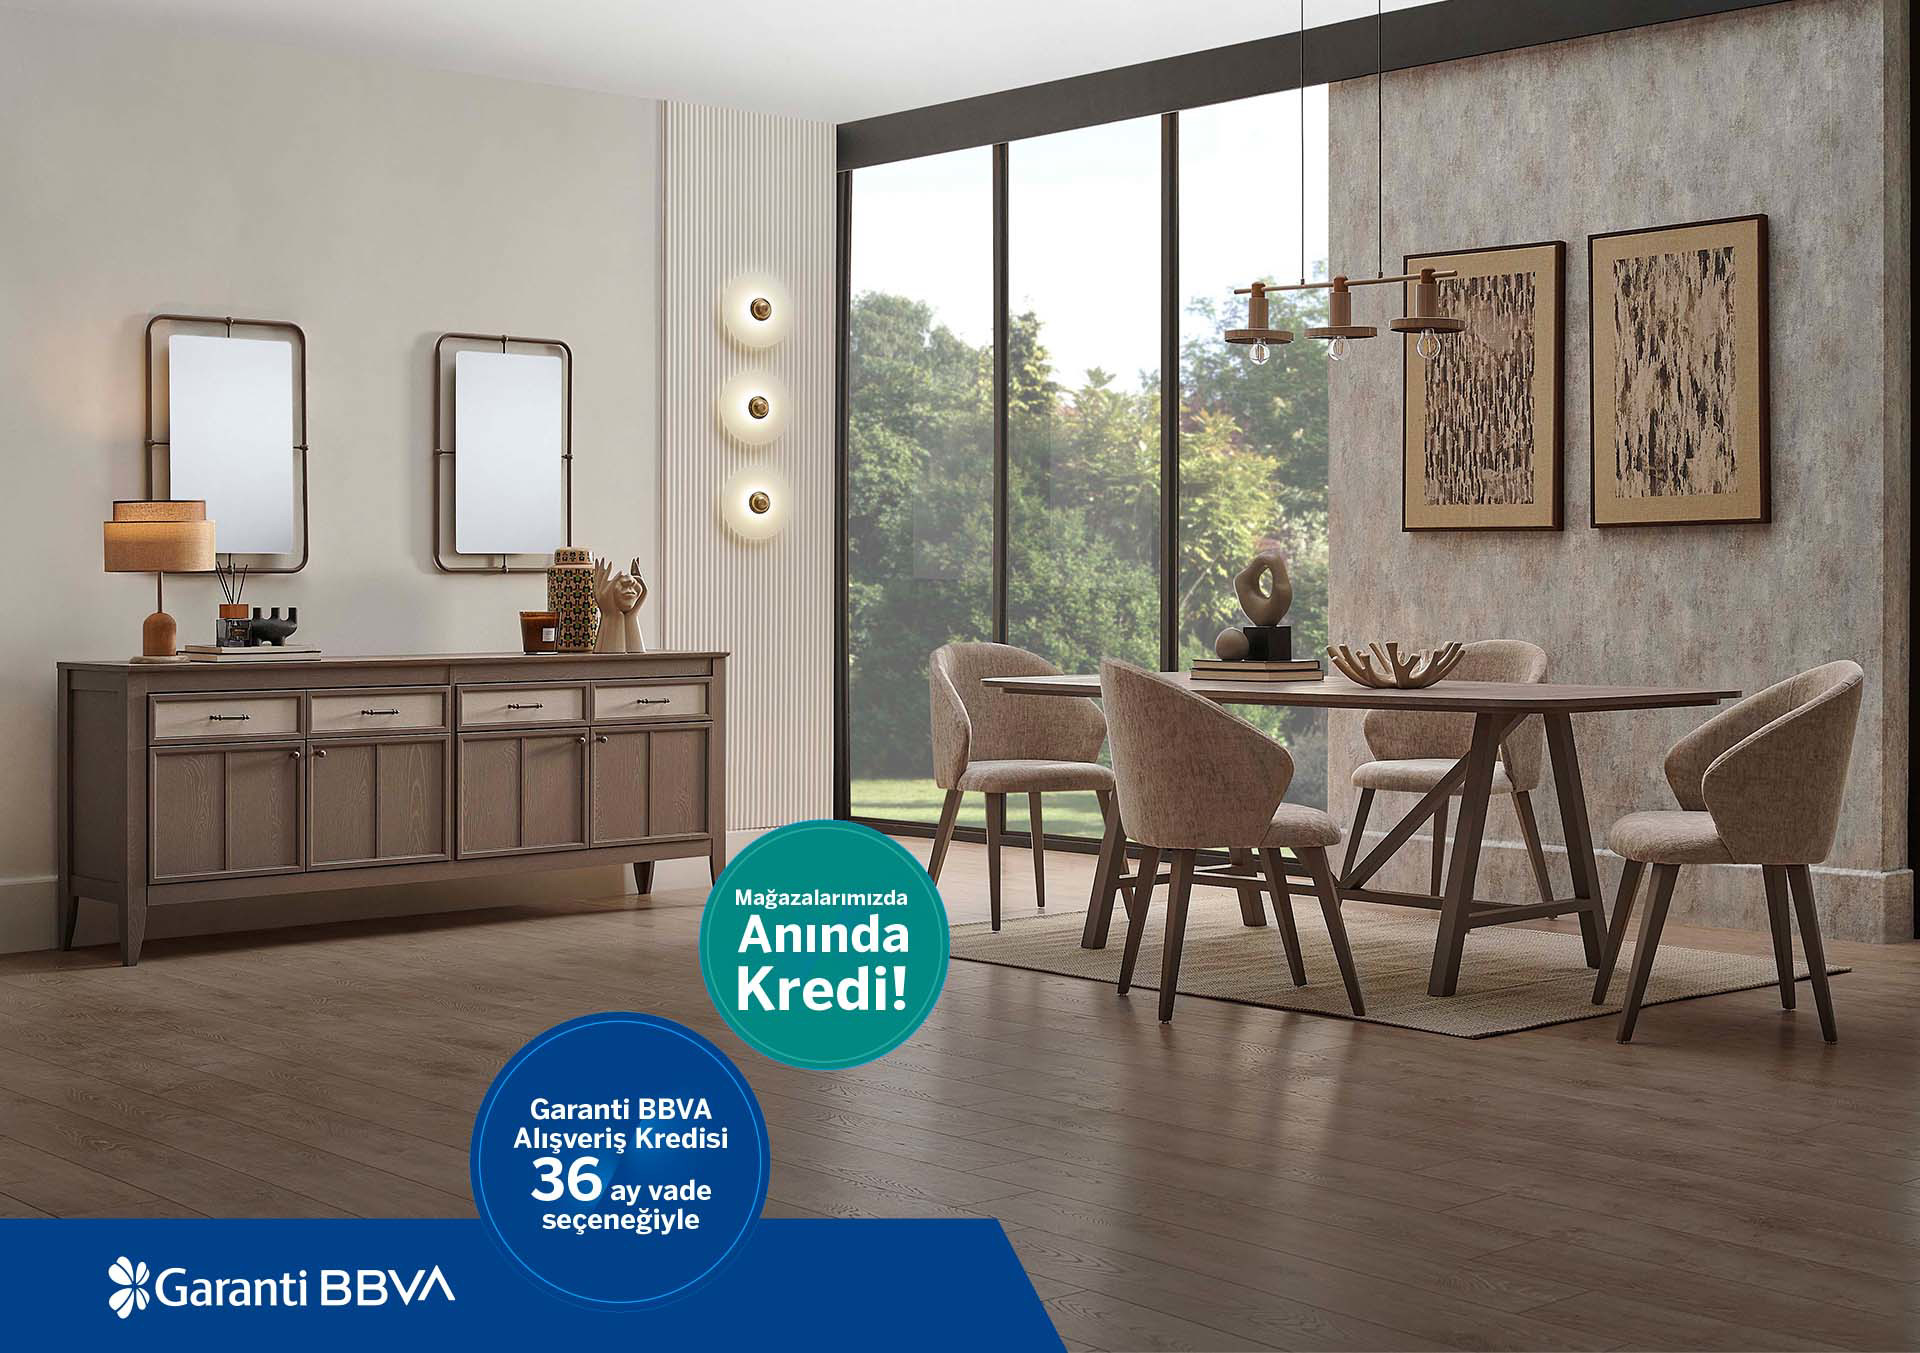 Garanti BBVA Alışveriş Kredisi 36 ay vade seçeneği ile!